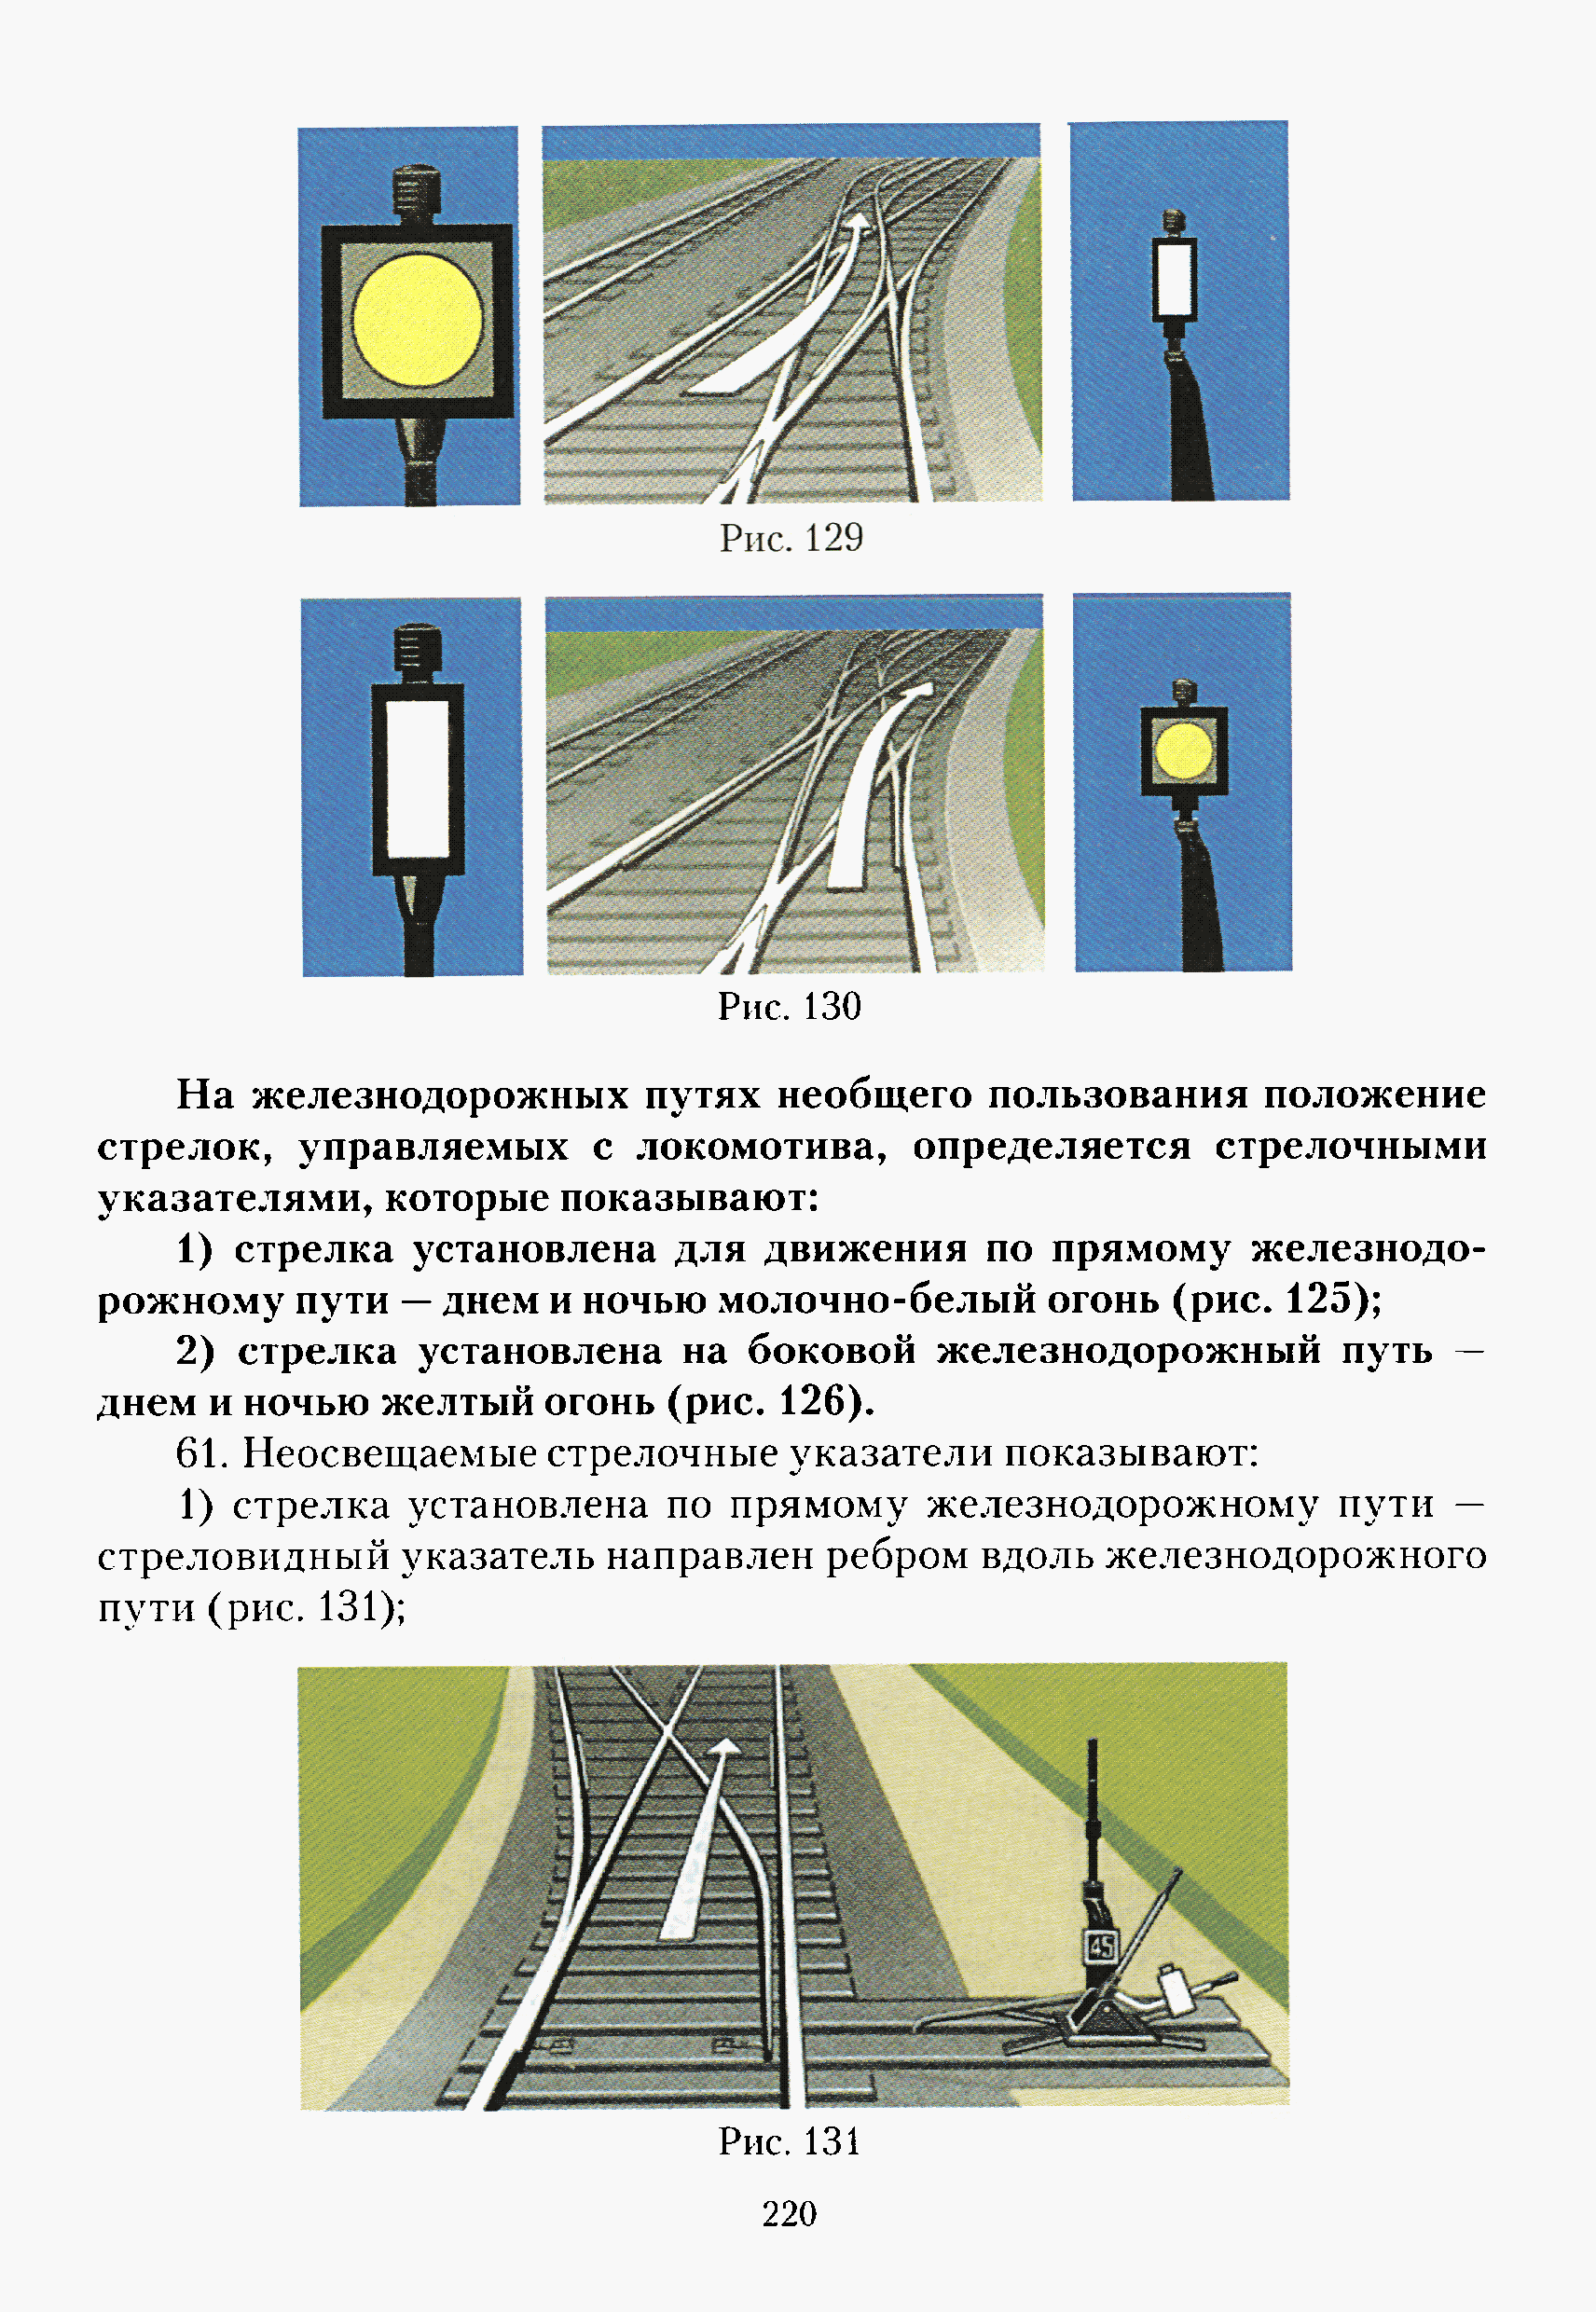 Сигнализация по движению поездов